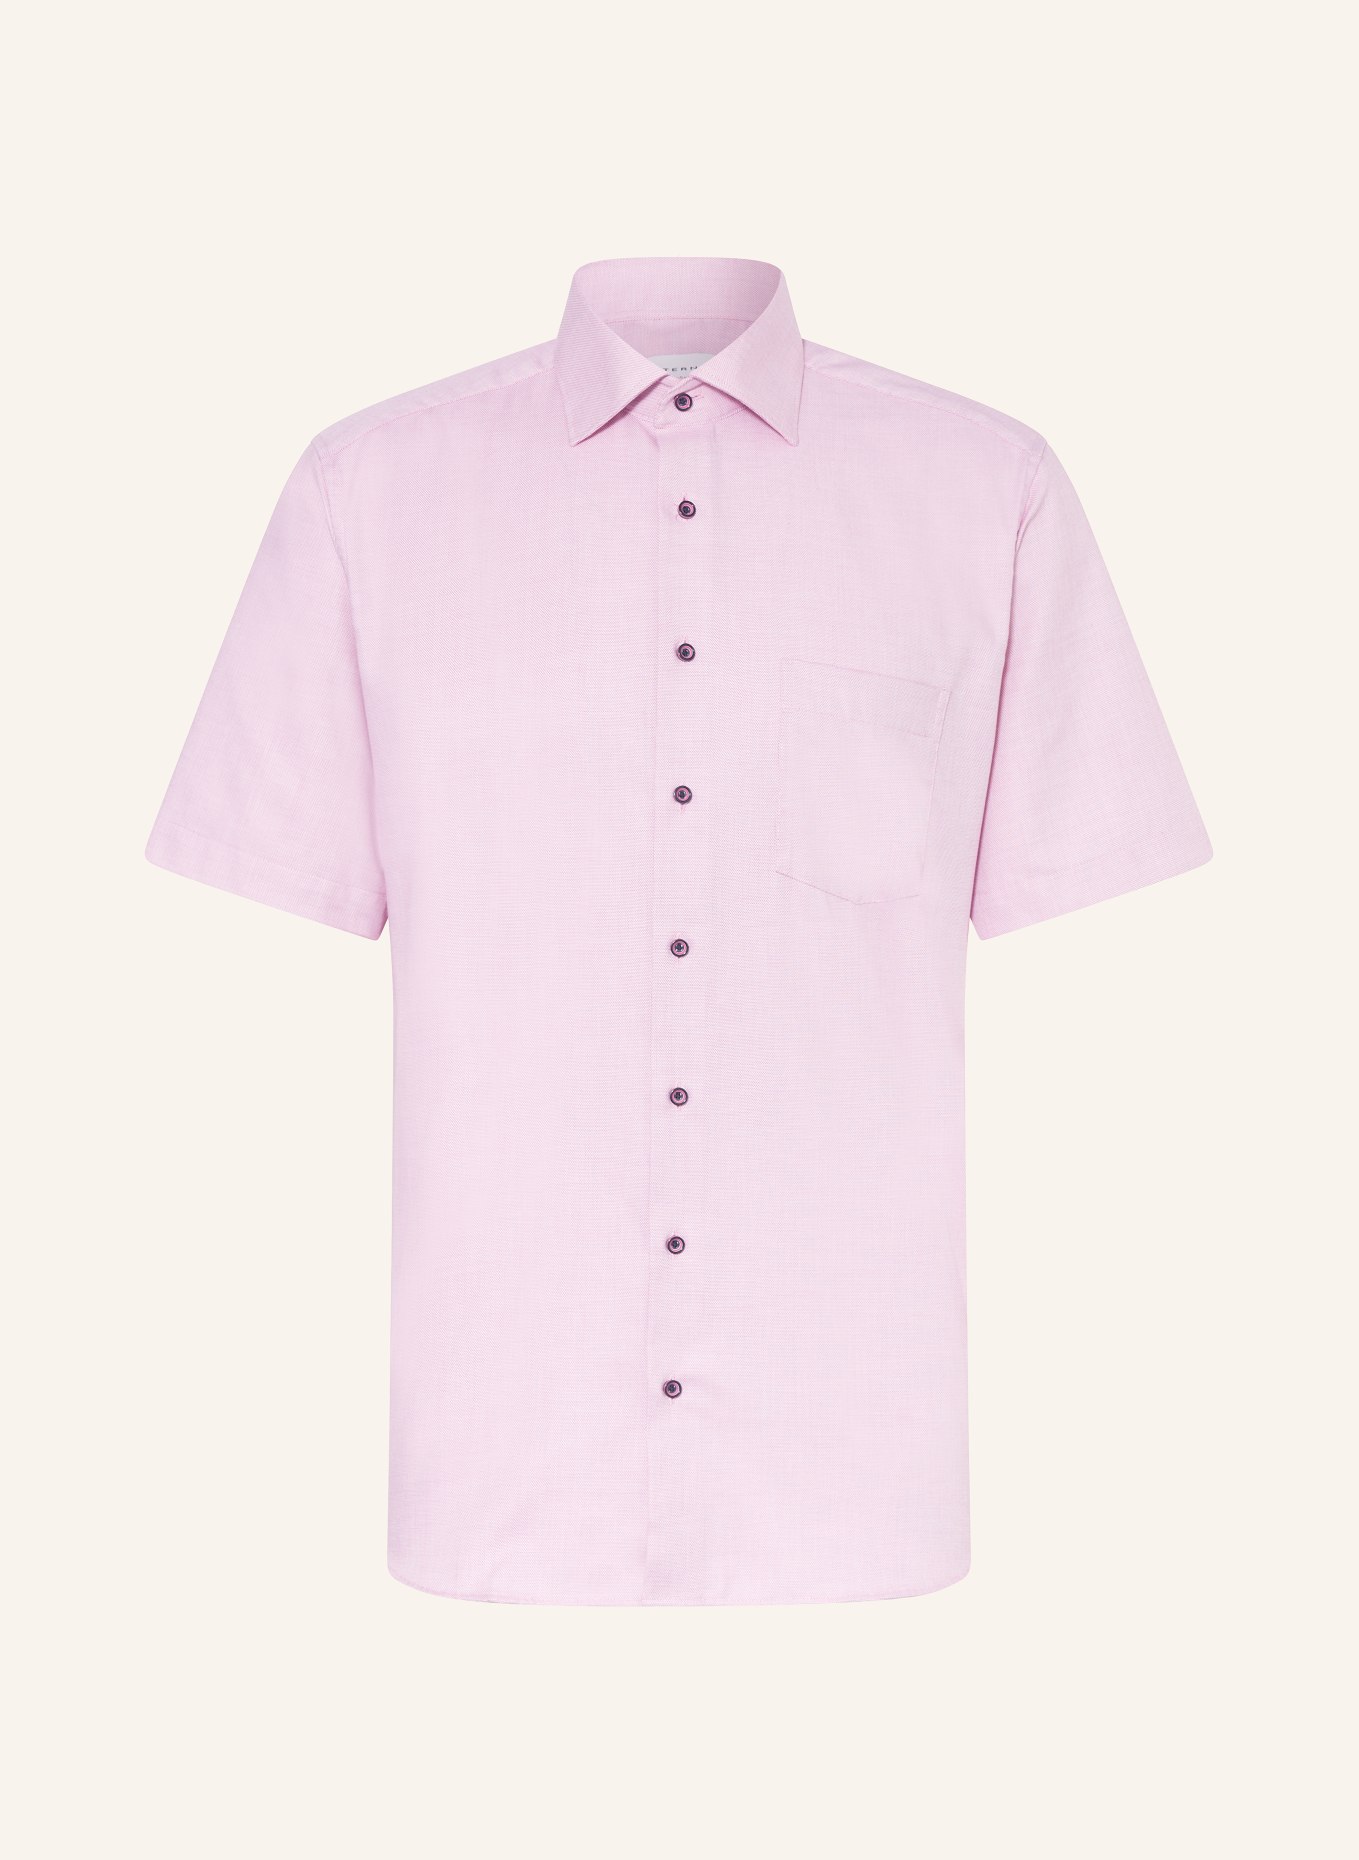 ETERNA Short sleeve shirt comfort fit, Color: PINK (Image 1)